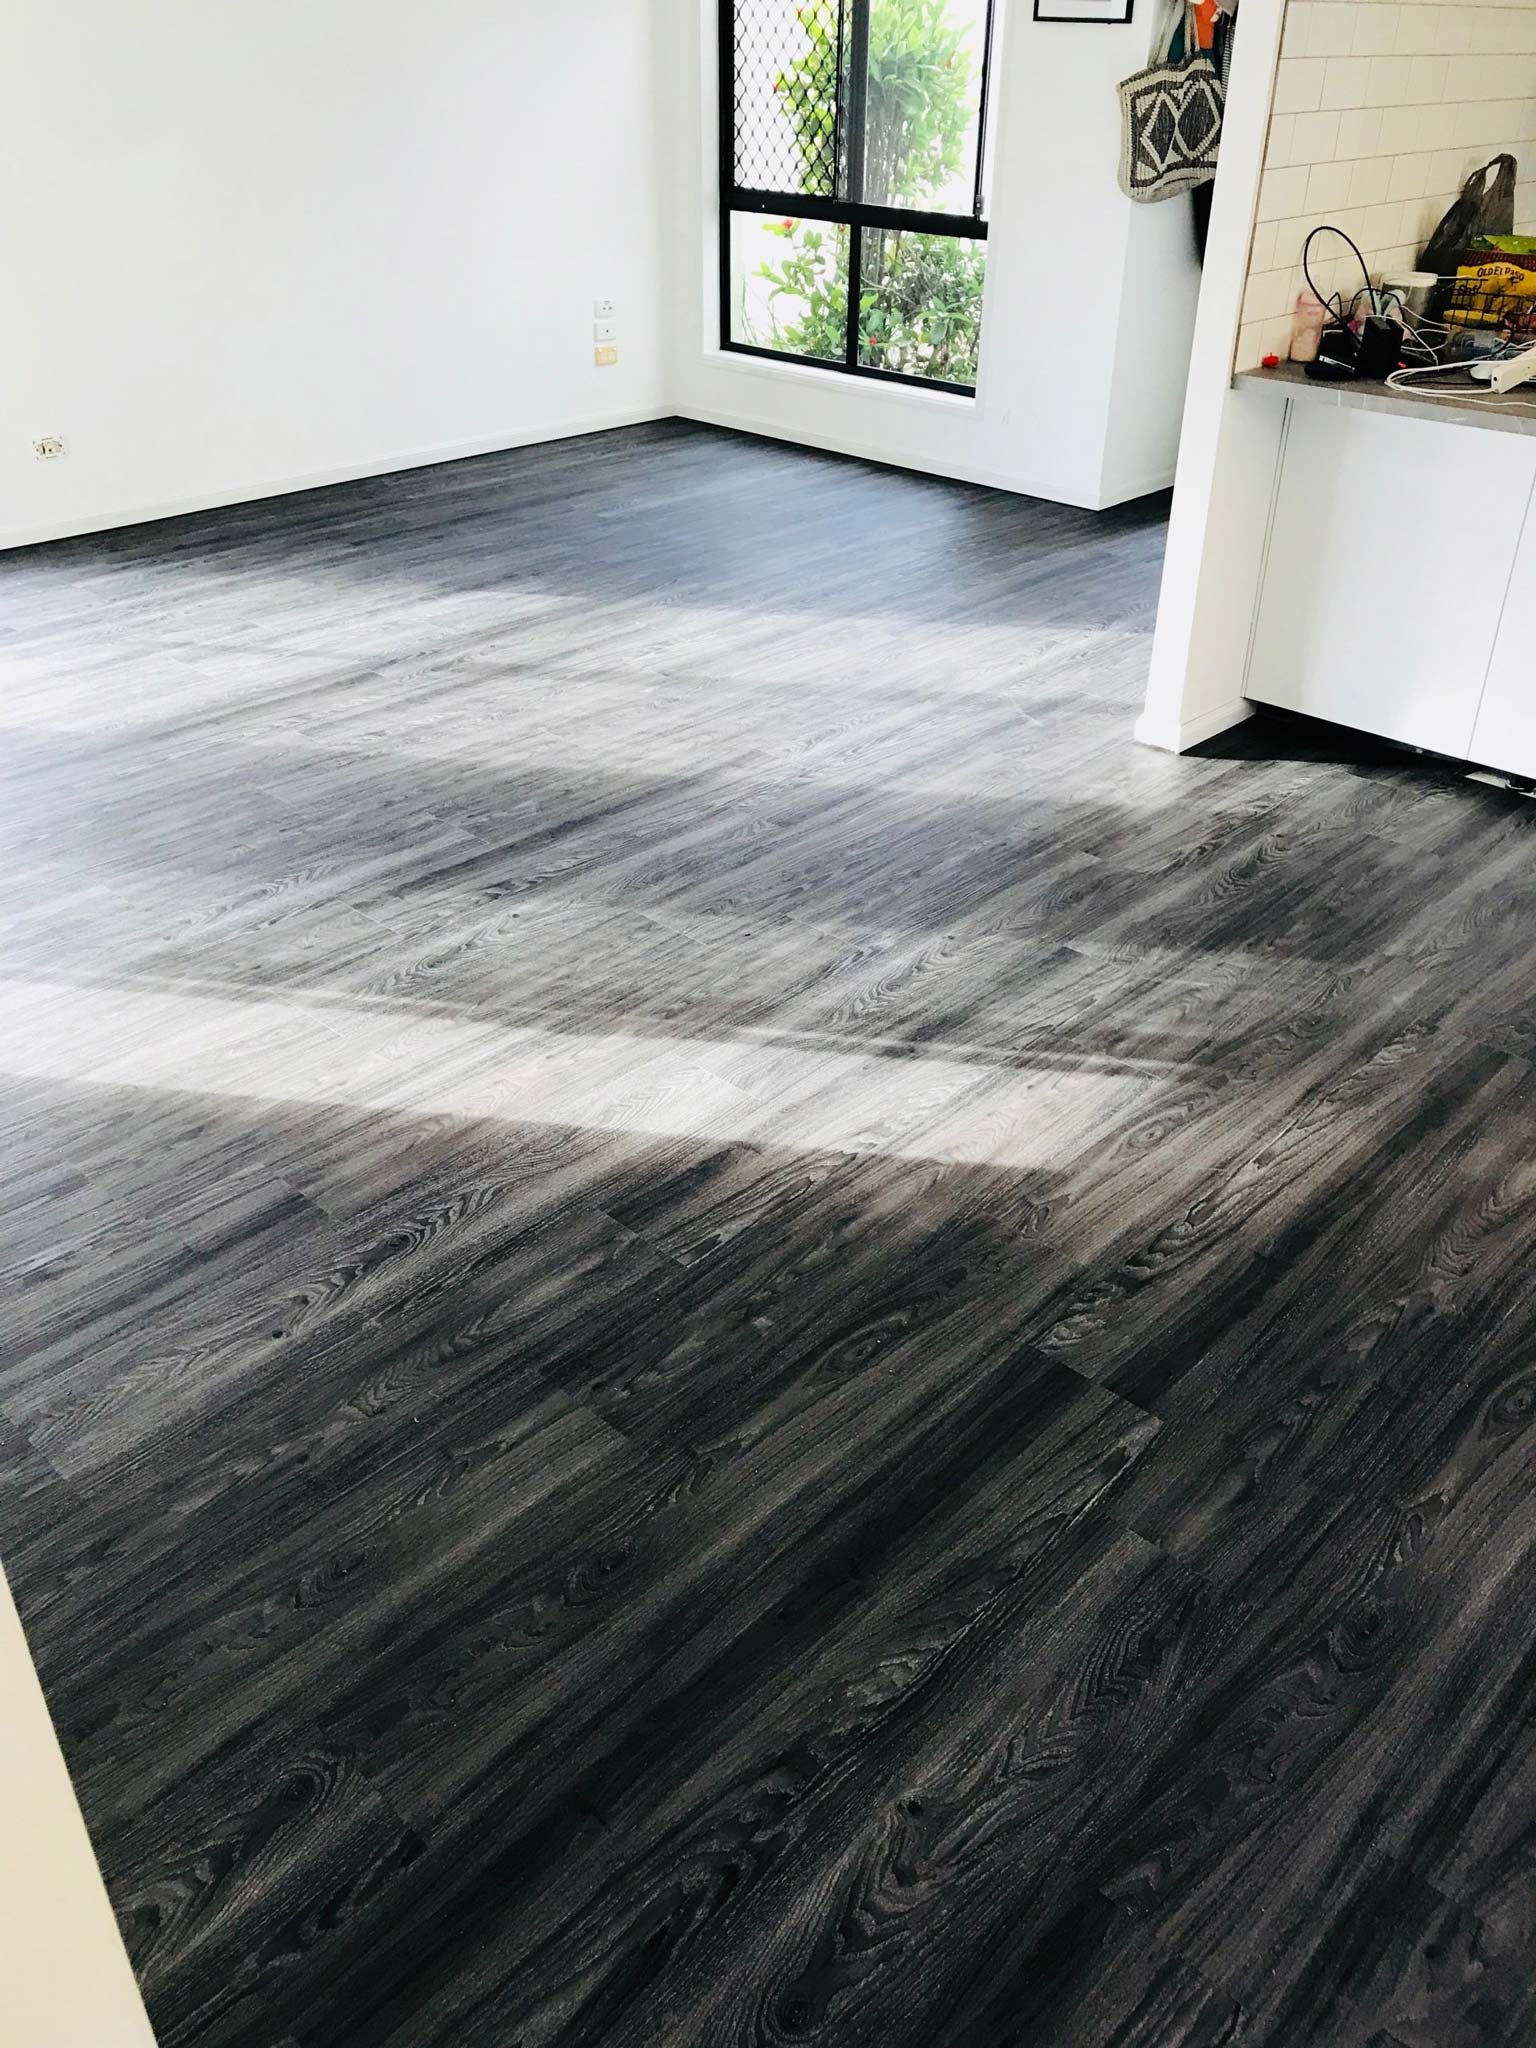 black tiles wood flooring